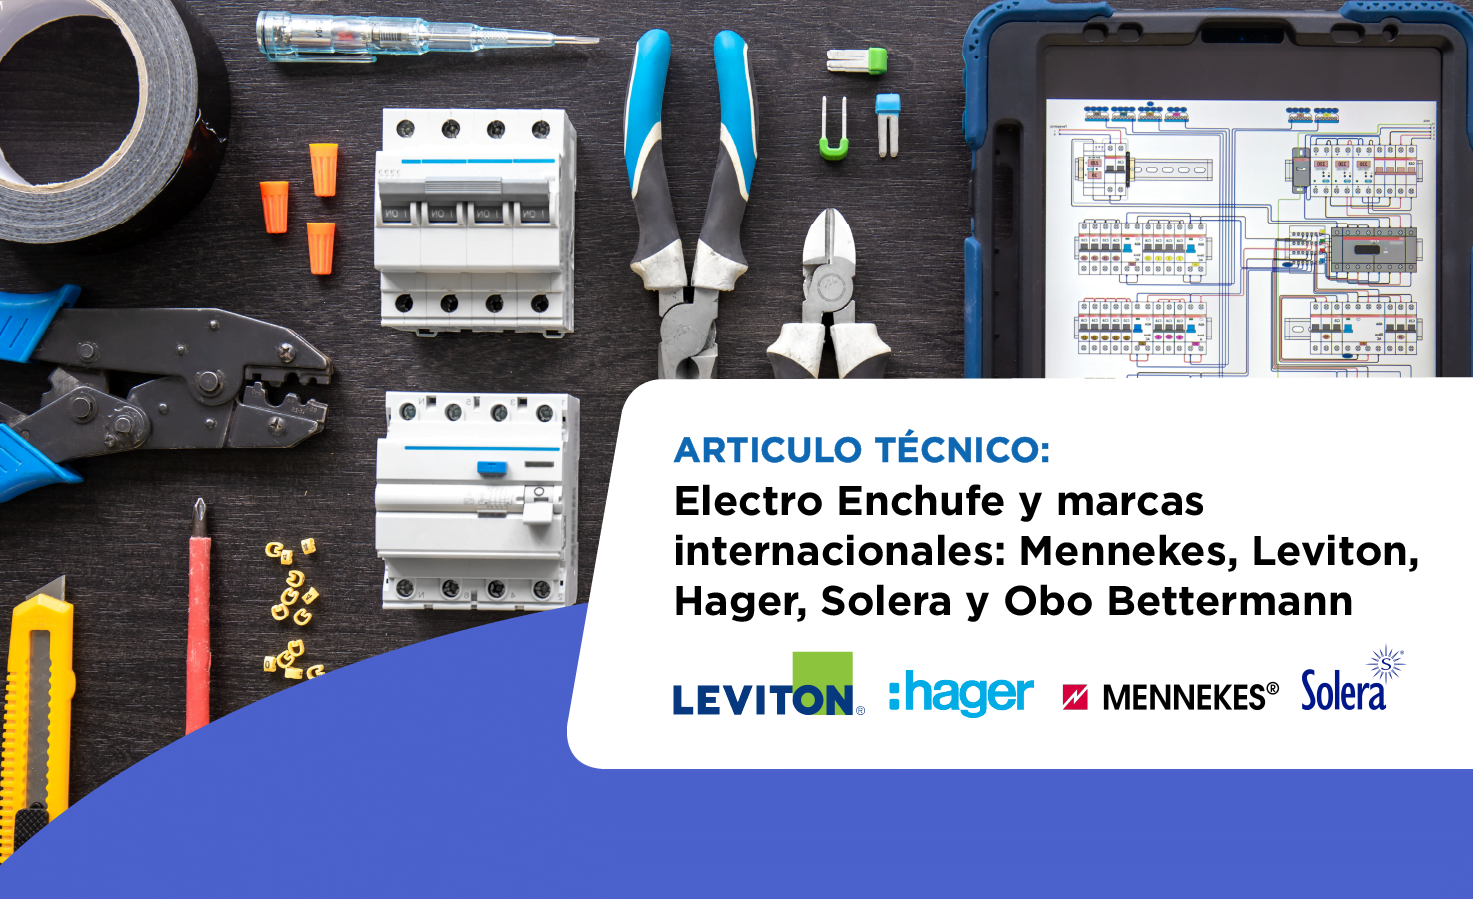 Electro Enchufe y marcas internacionales: Mennekes, Leviton, Hager, Solera y Obo Bettermann